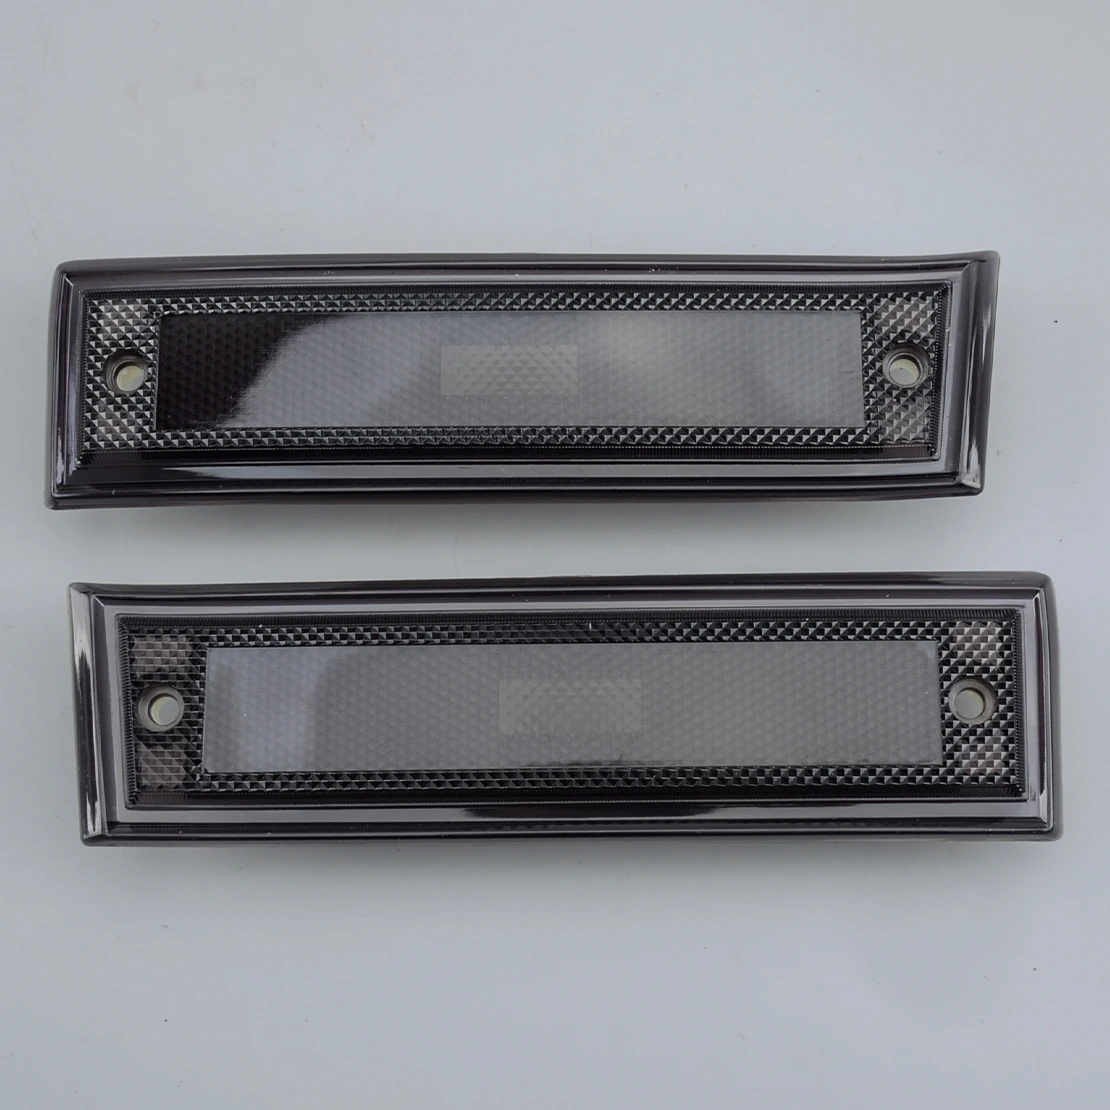 Luz de posición lateral negra ahumada, carcasa de lente GM2551107 915557 2 piezas, compatible con GMC C1500 C2500 Chevrolet C10 C20 C30, 915558